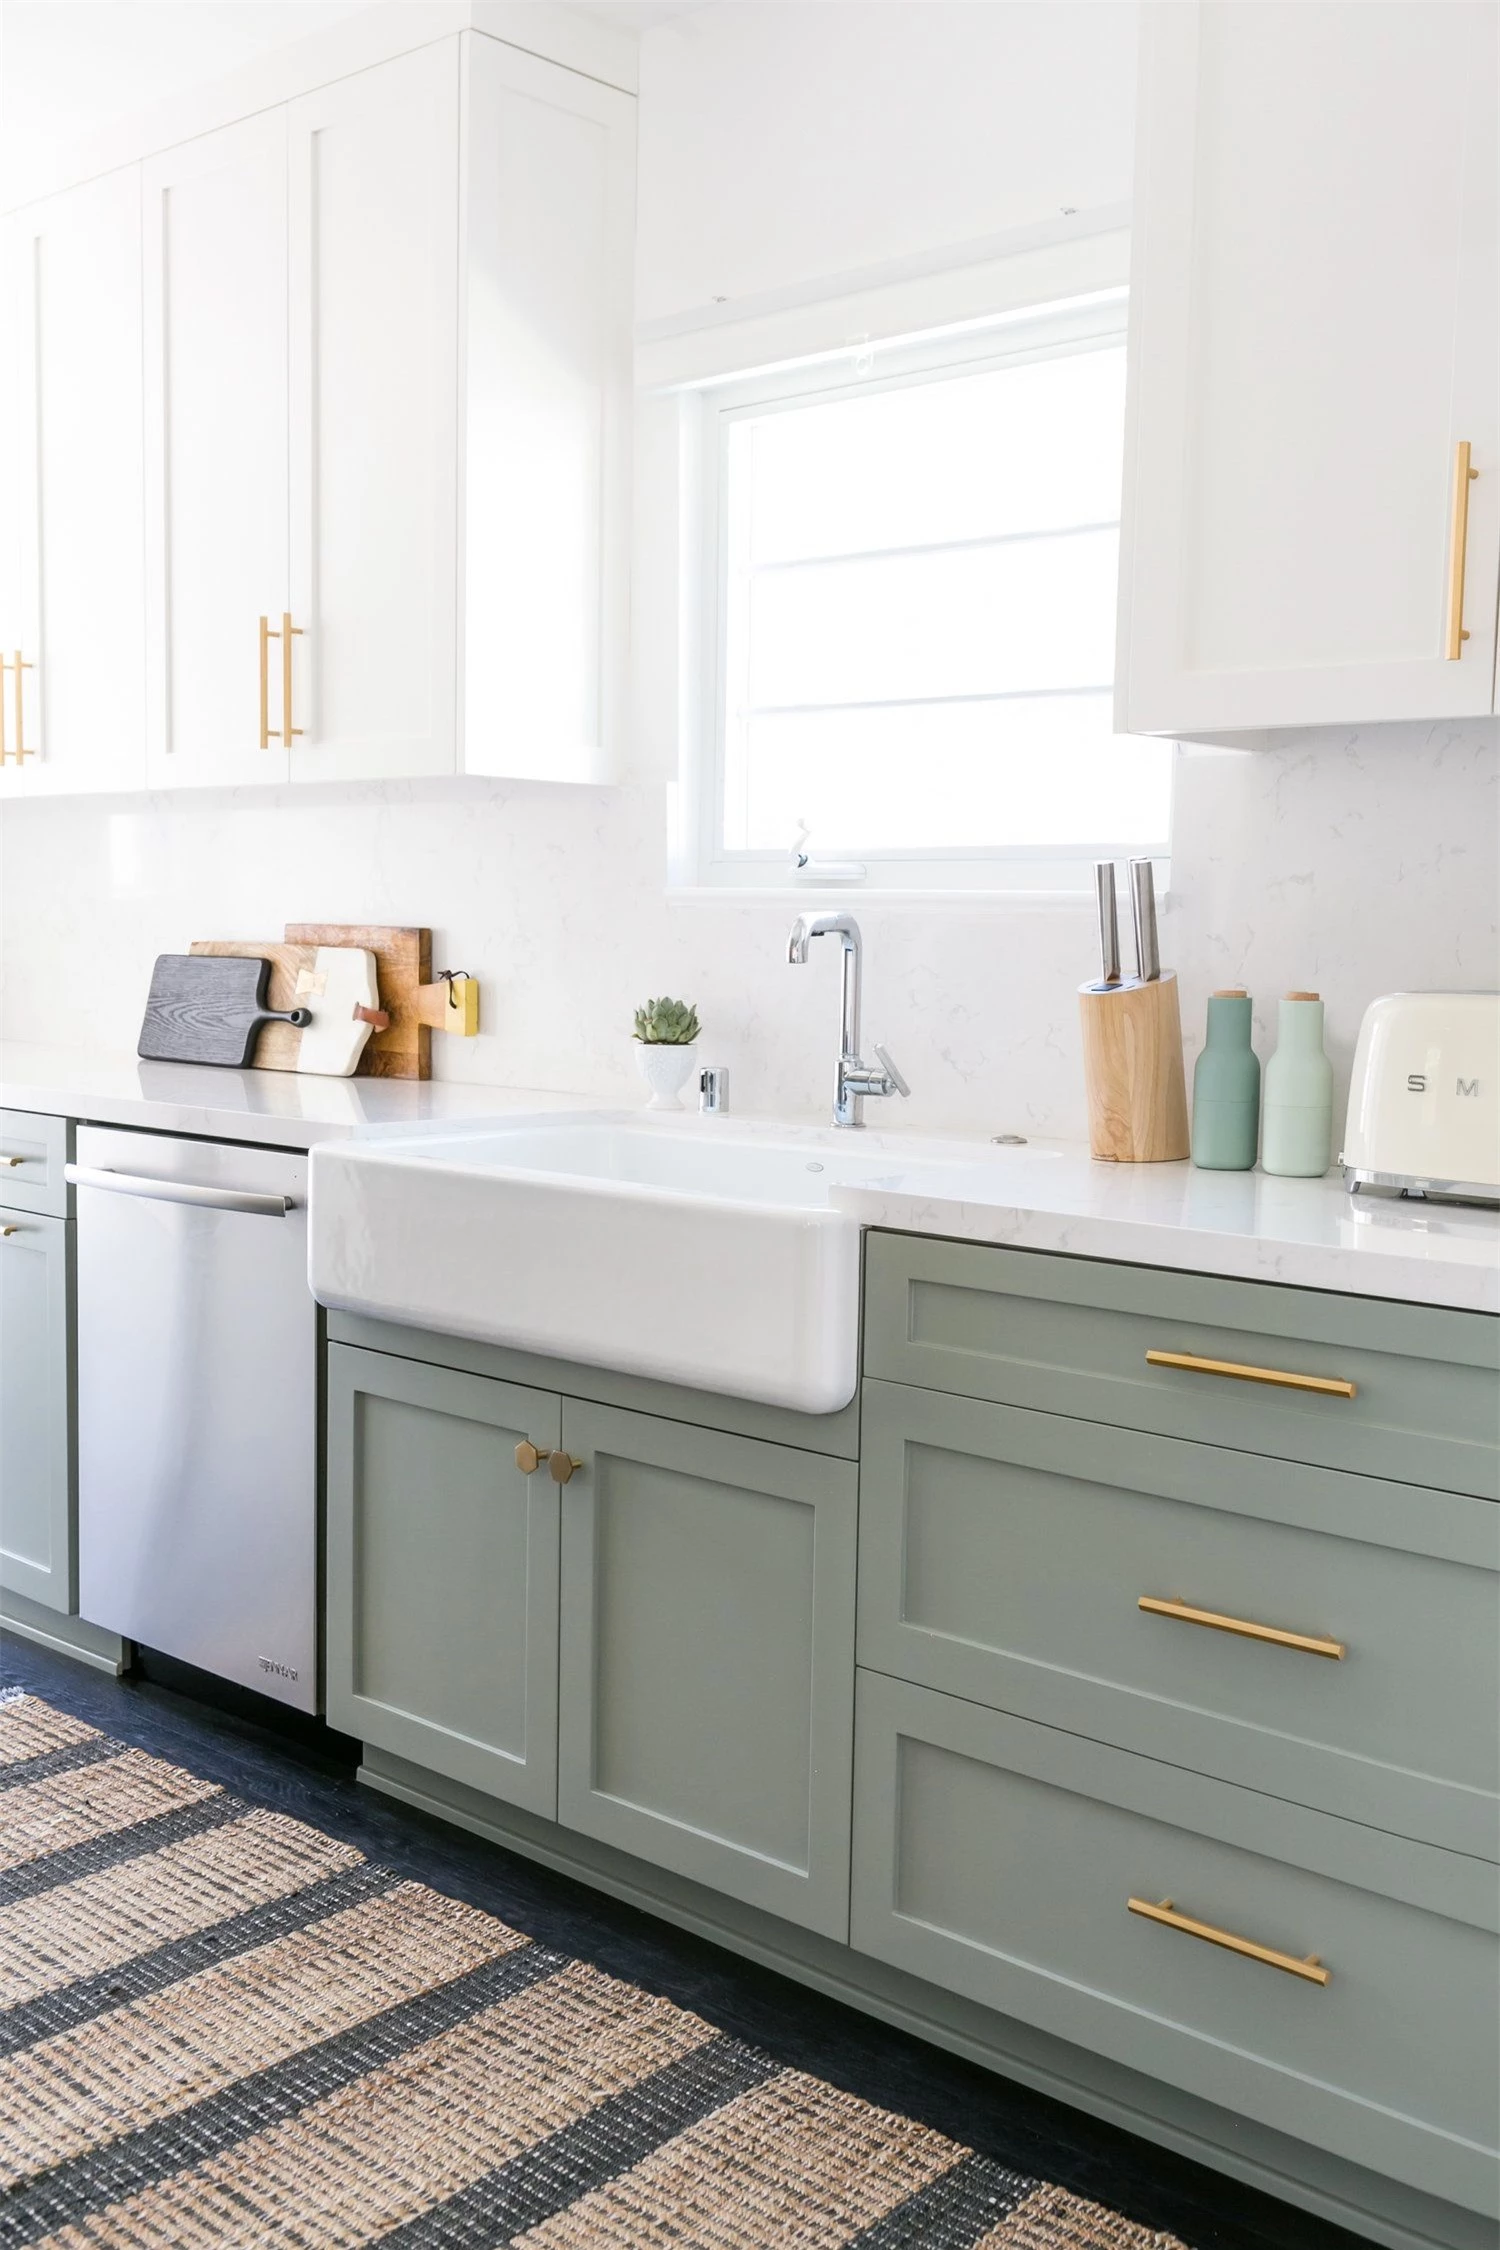 Những ý tưởng thiết kế siêu dễ giúp bạn sở hữu căn bếp đẹp mơ màng ấn tượng - Ảnh 6.